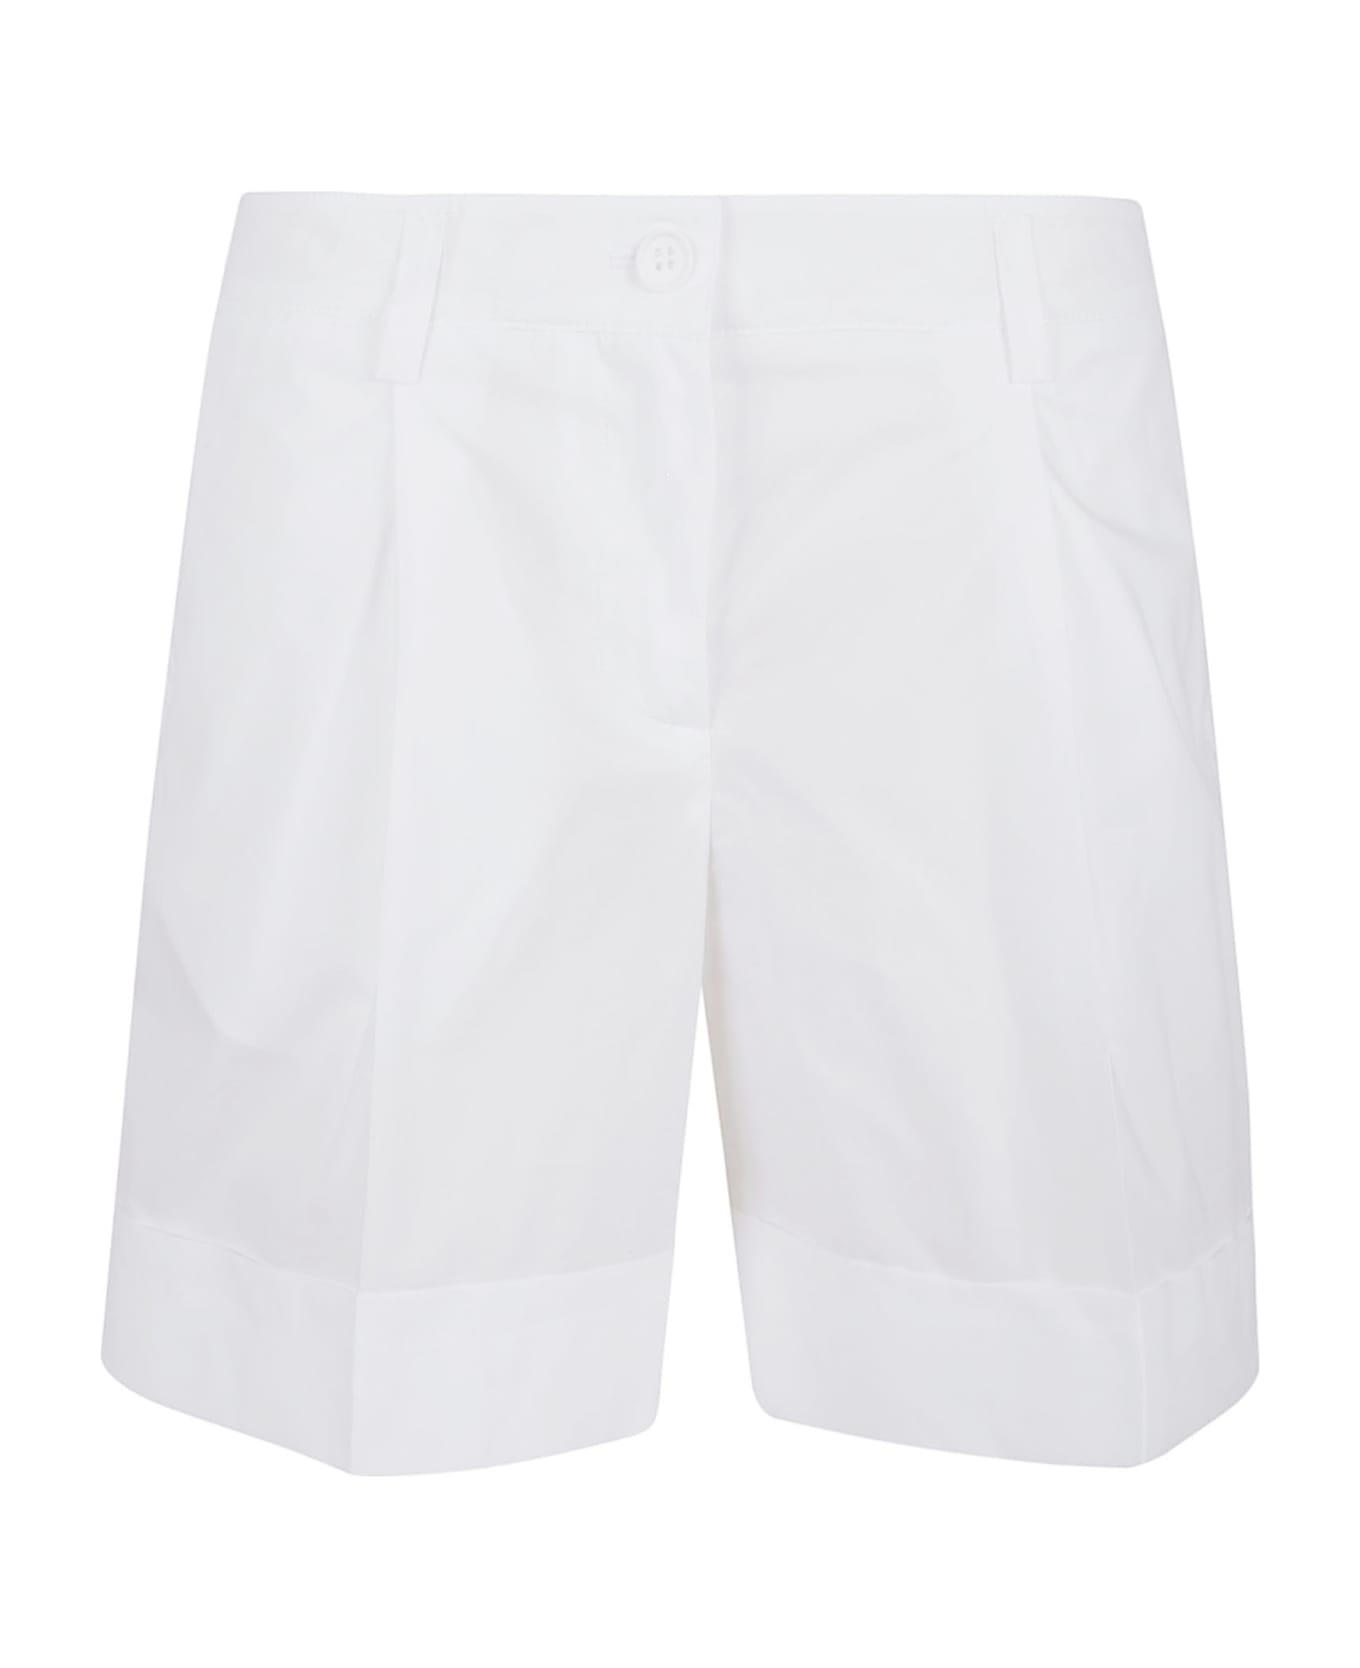 Parosh White Cotton Shorts - Bianco